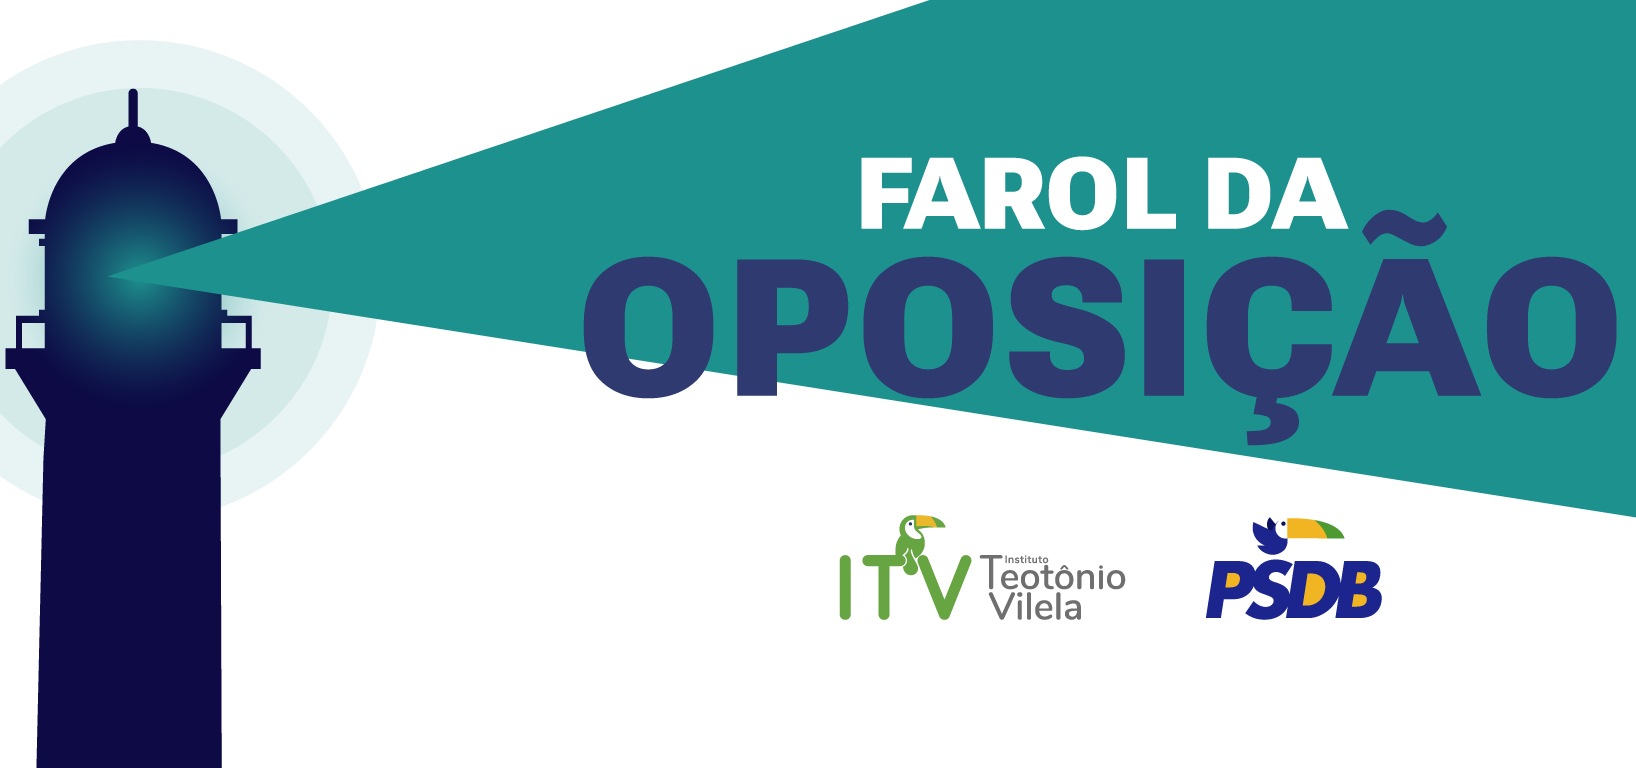 Apresentamos a primeira edição do Farol da Oposição. Leia e compartilhe!